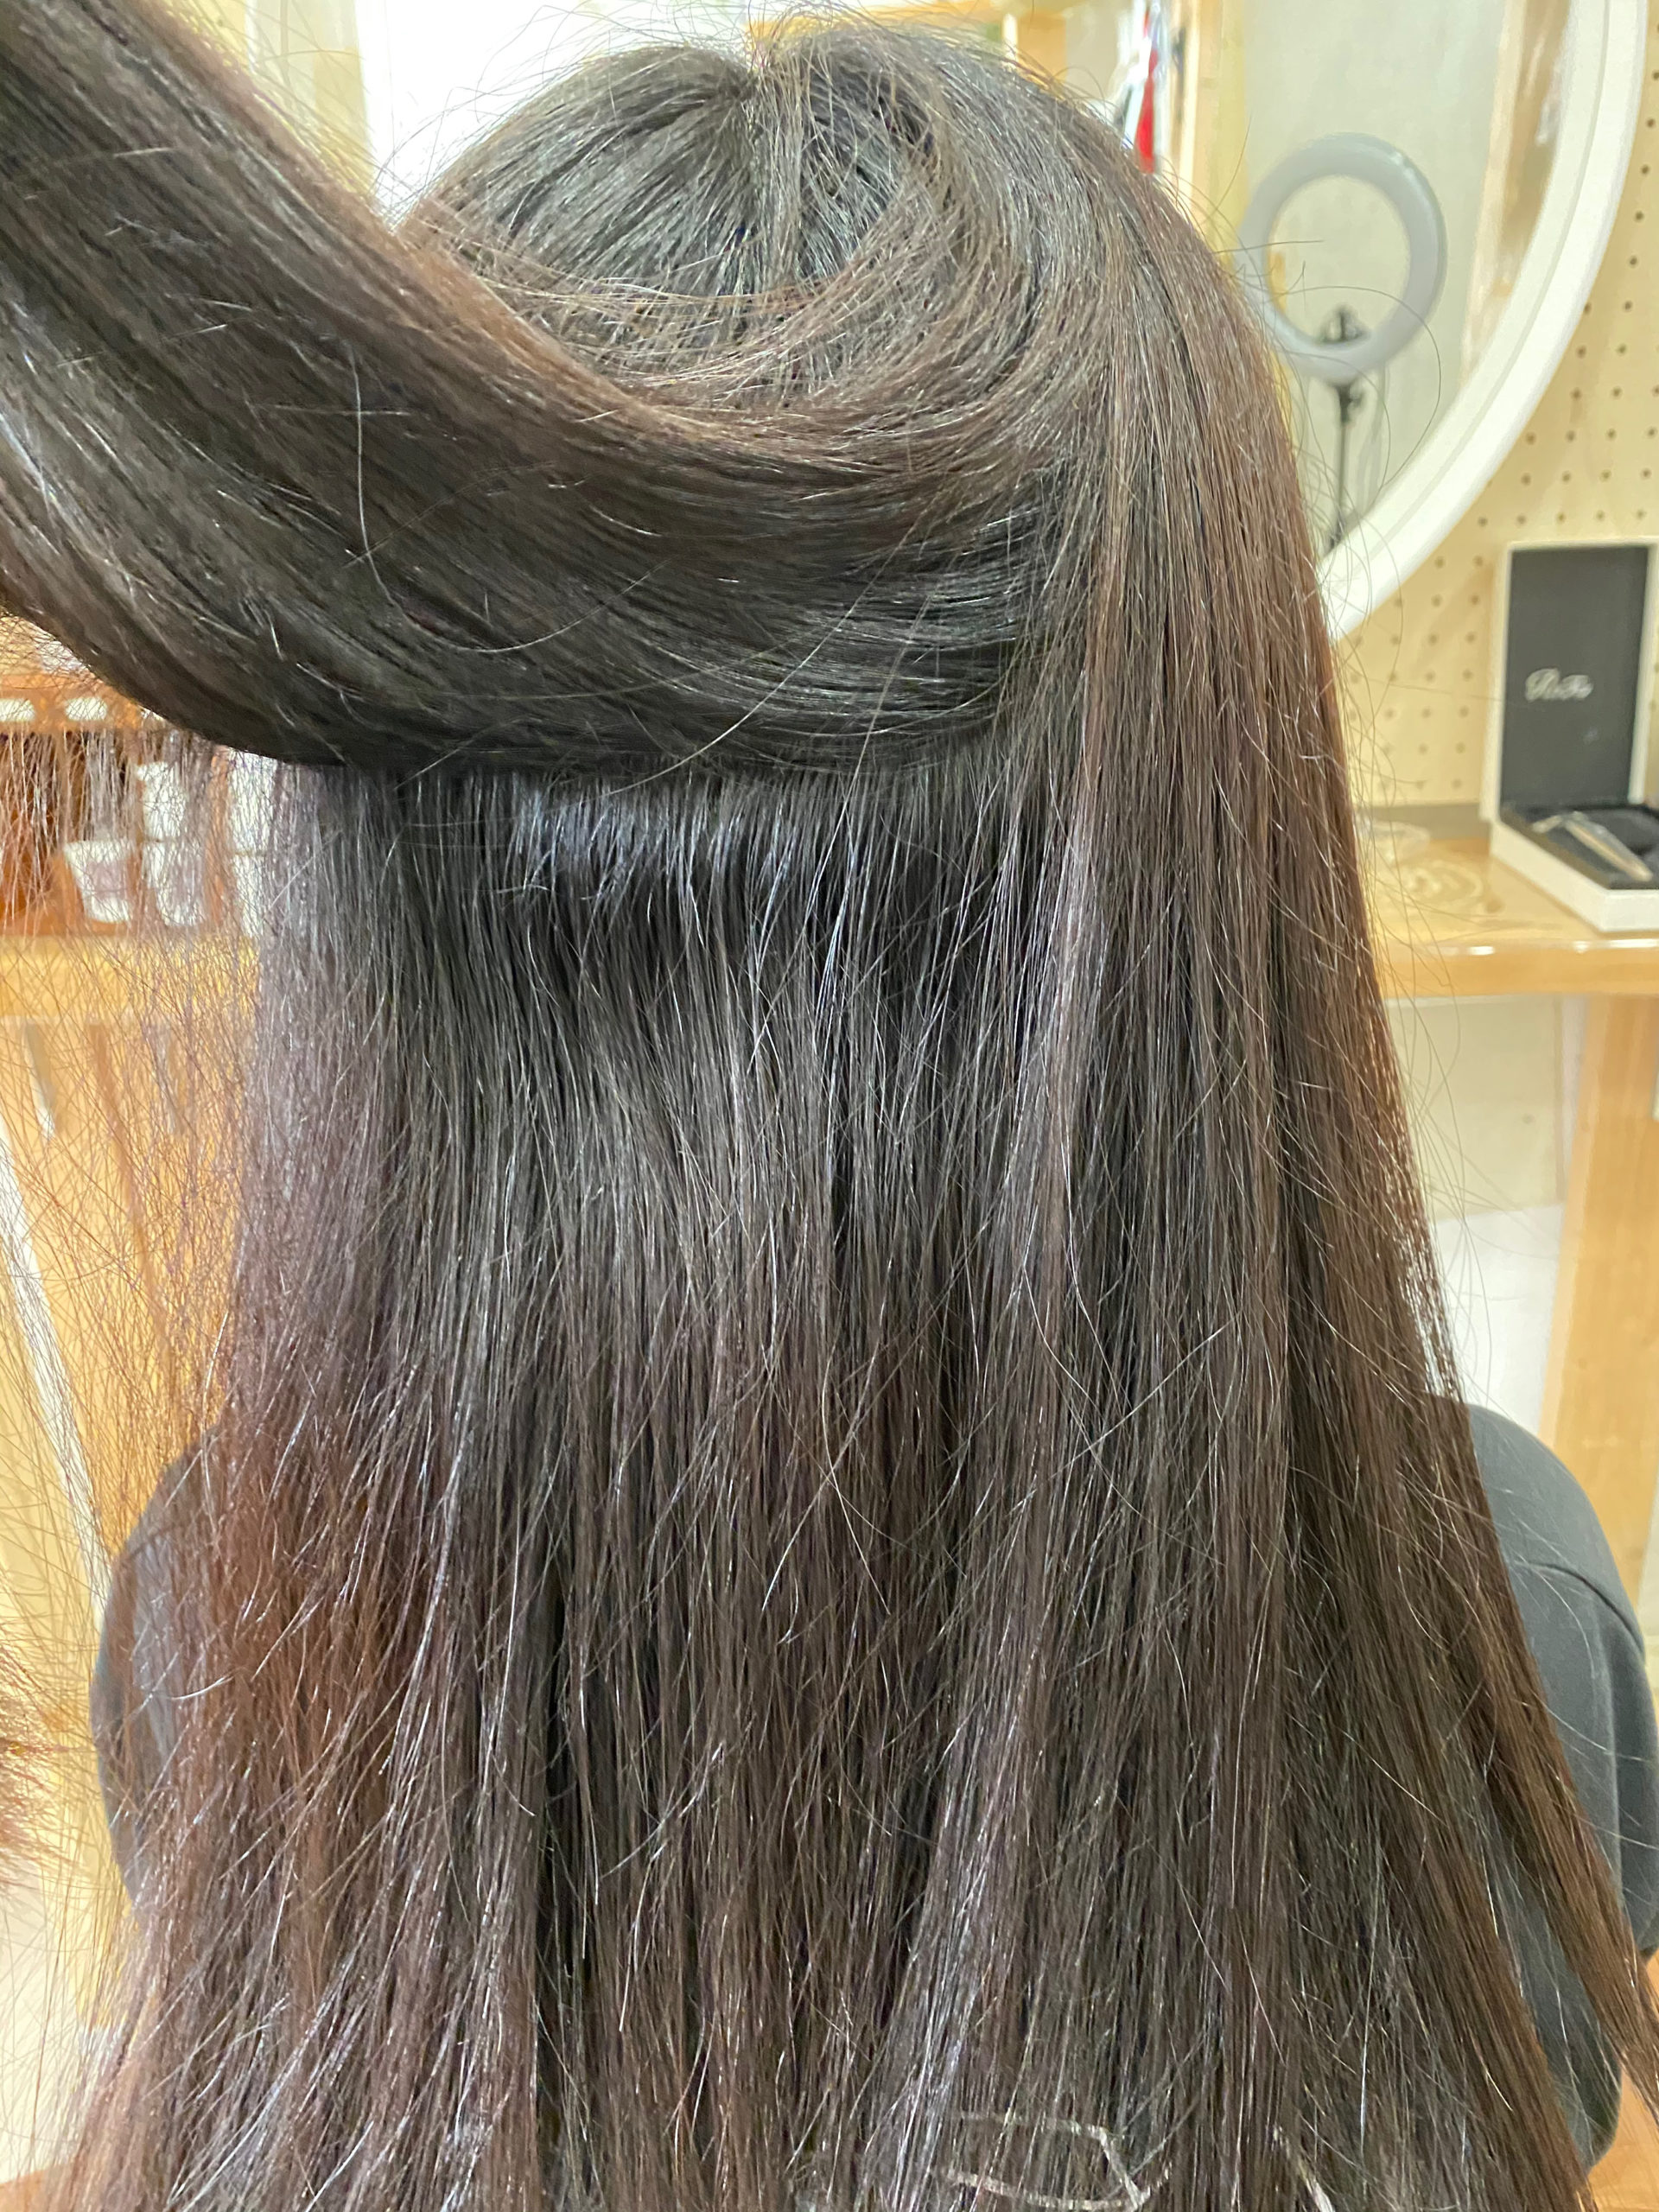 LULUトリートメント×縮毛矯正で毛先まで艶髪ストレートヘア。原宿・表参道『髪のお悩みを解決するヘアケア美容師の挑戦』